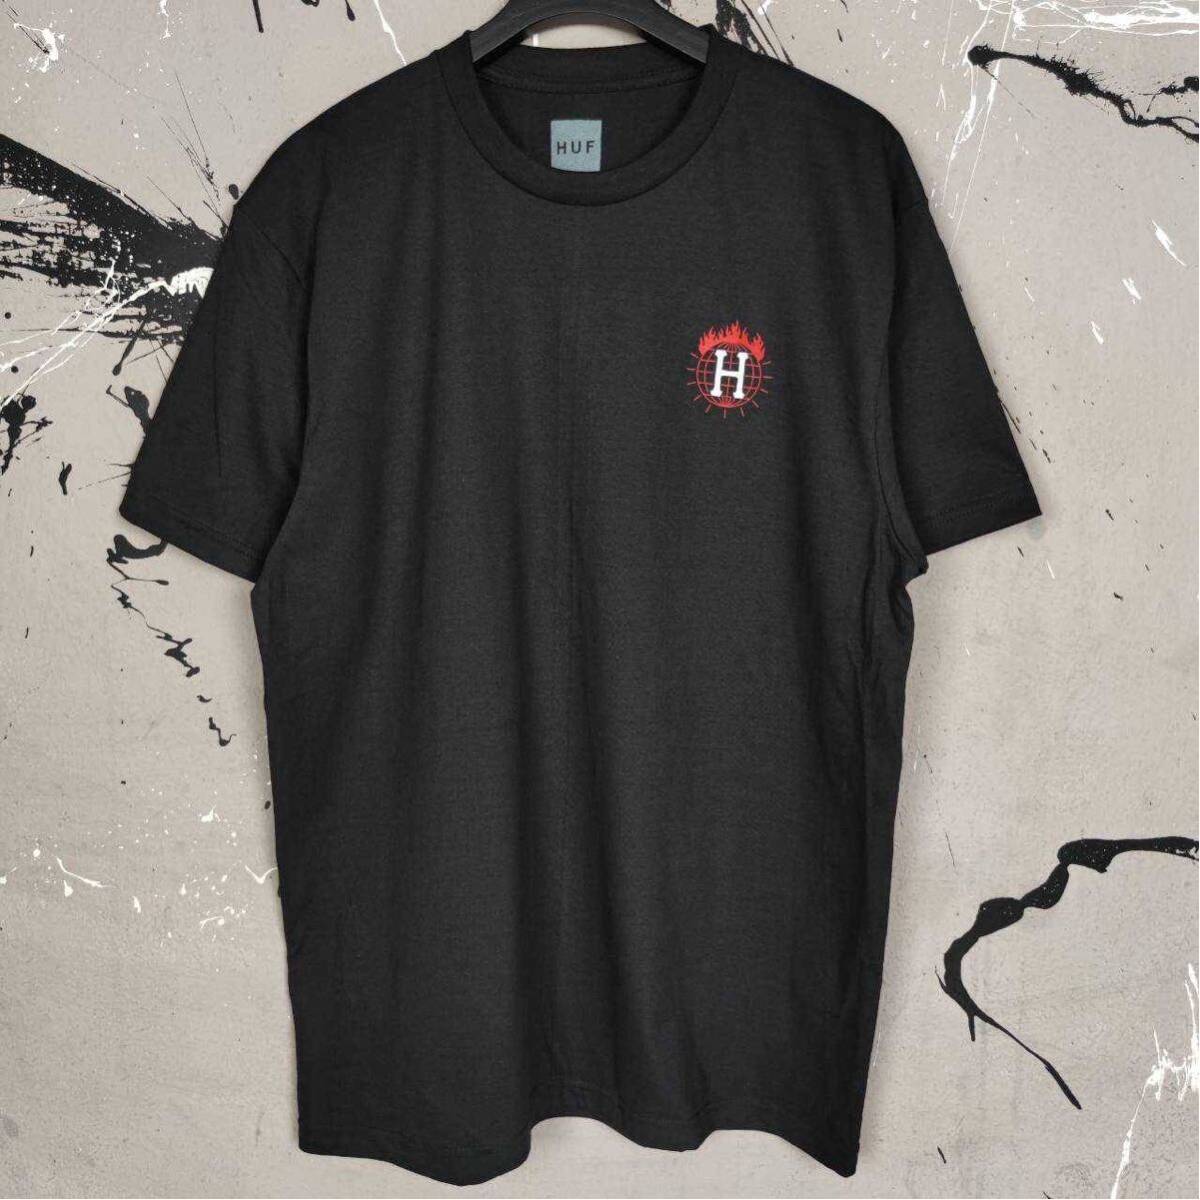 Tシャツ 黒 半袖 スラッシャー HUF ストリート系 スケボー スノボー サーフィン スケードボード Mサイズの画像4